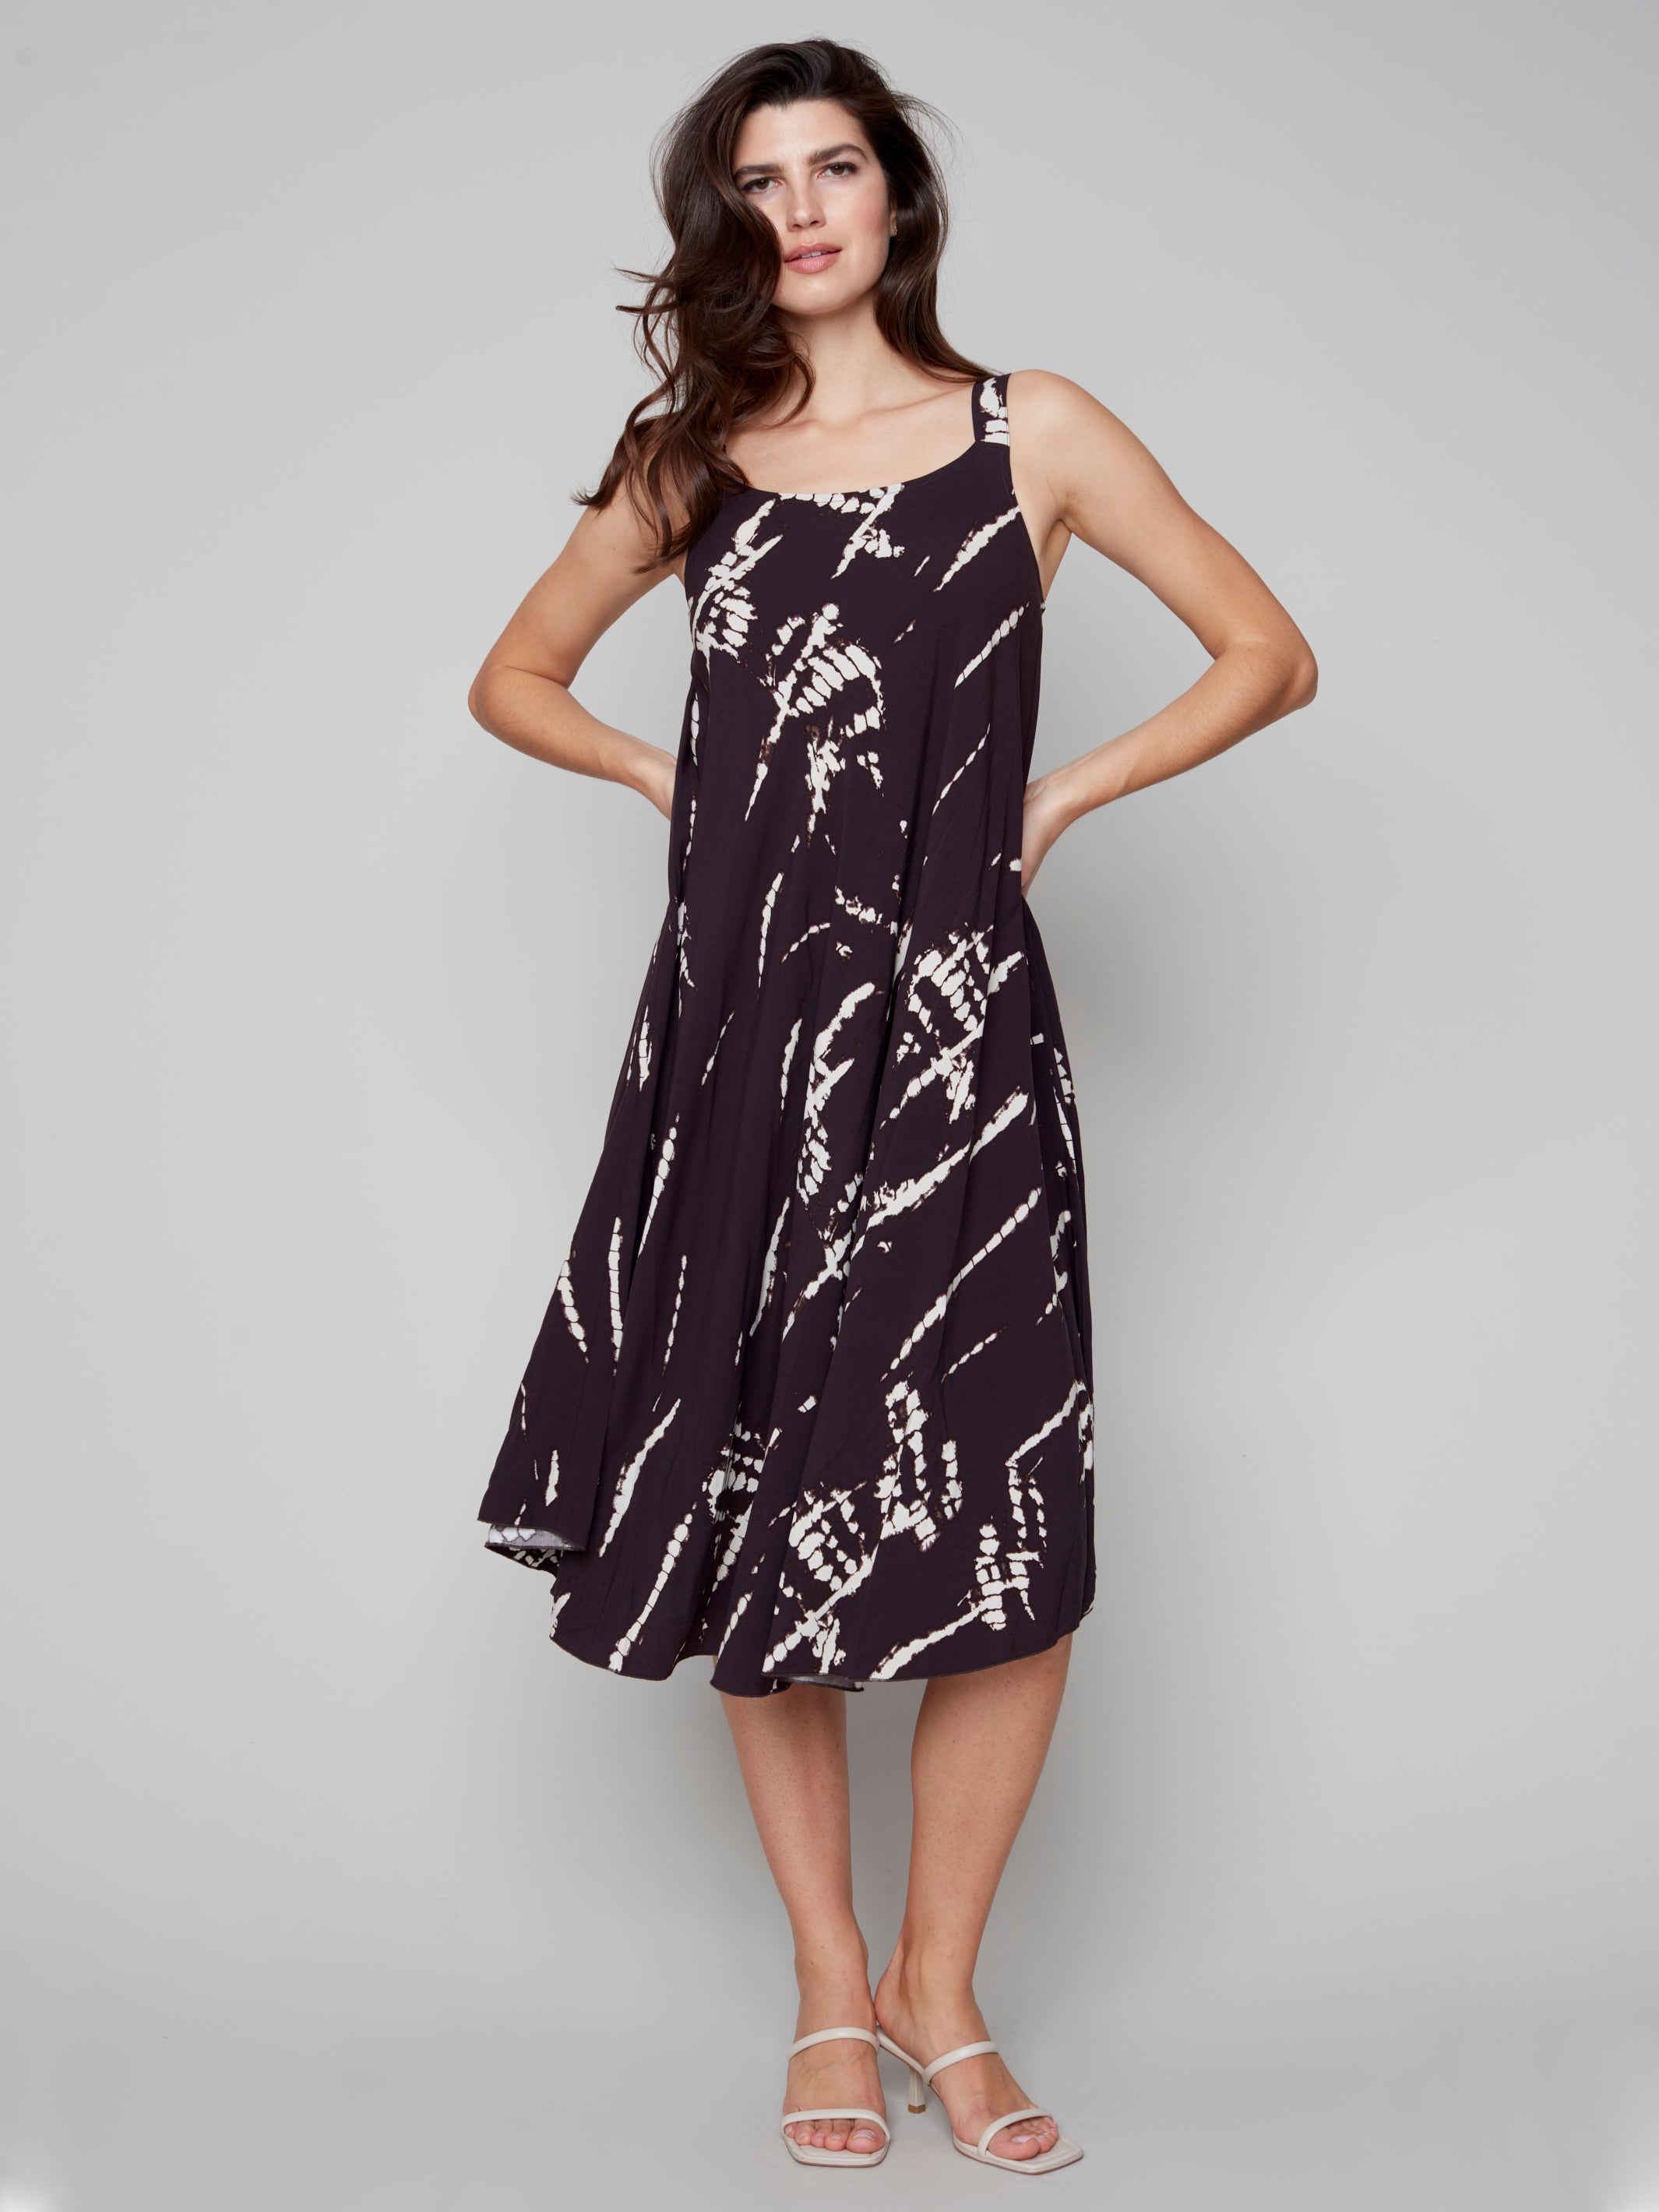 Sleeveless Printed A-Line Midi Dress by Charlie B